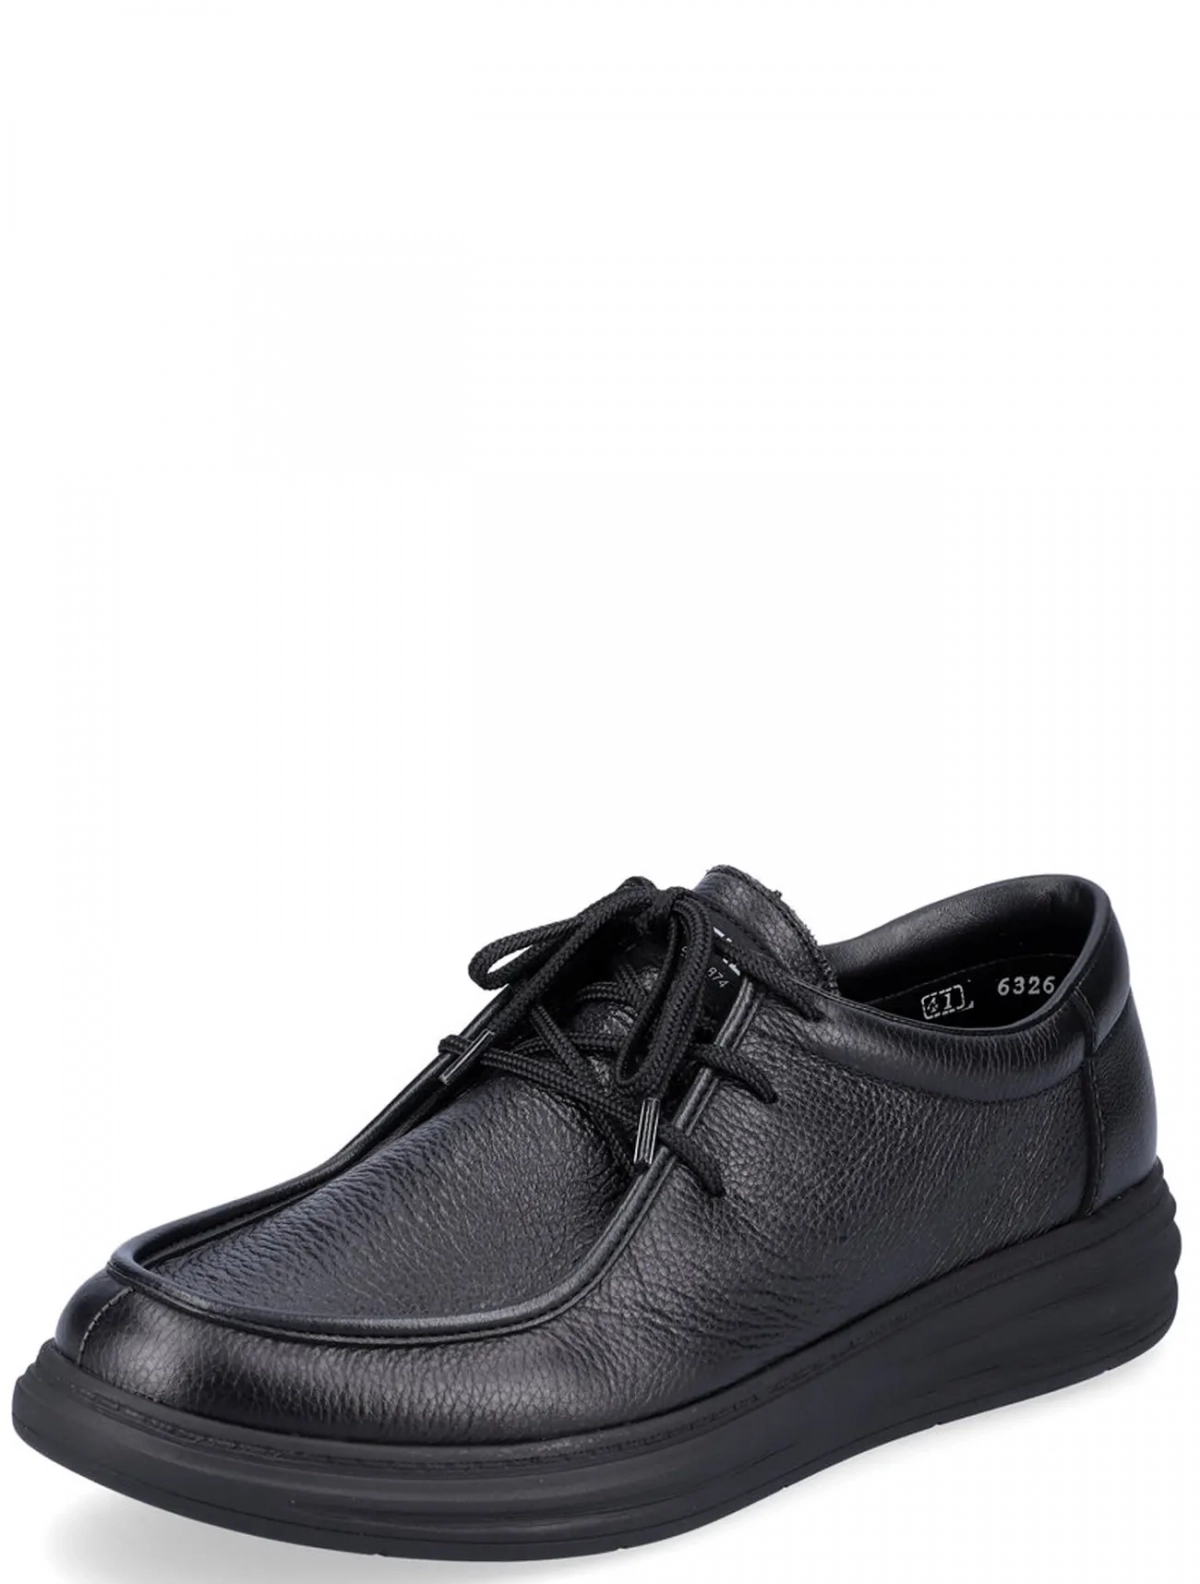 Rieker B6326-00 мужские туфли